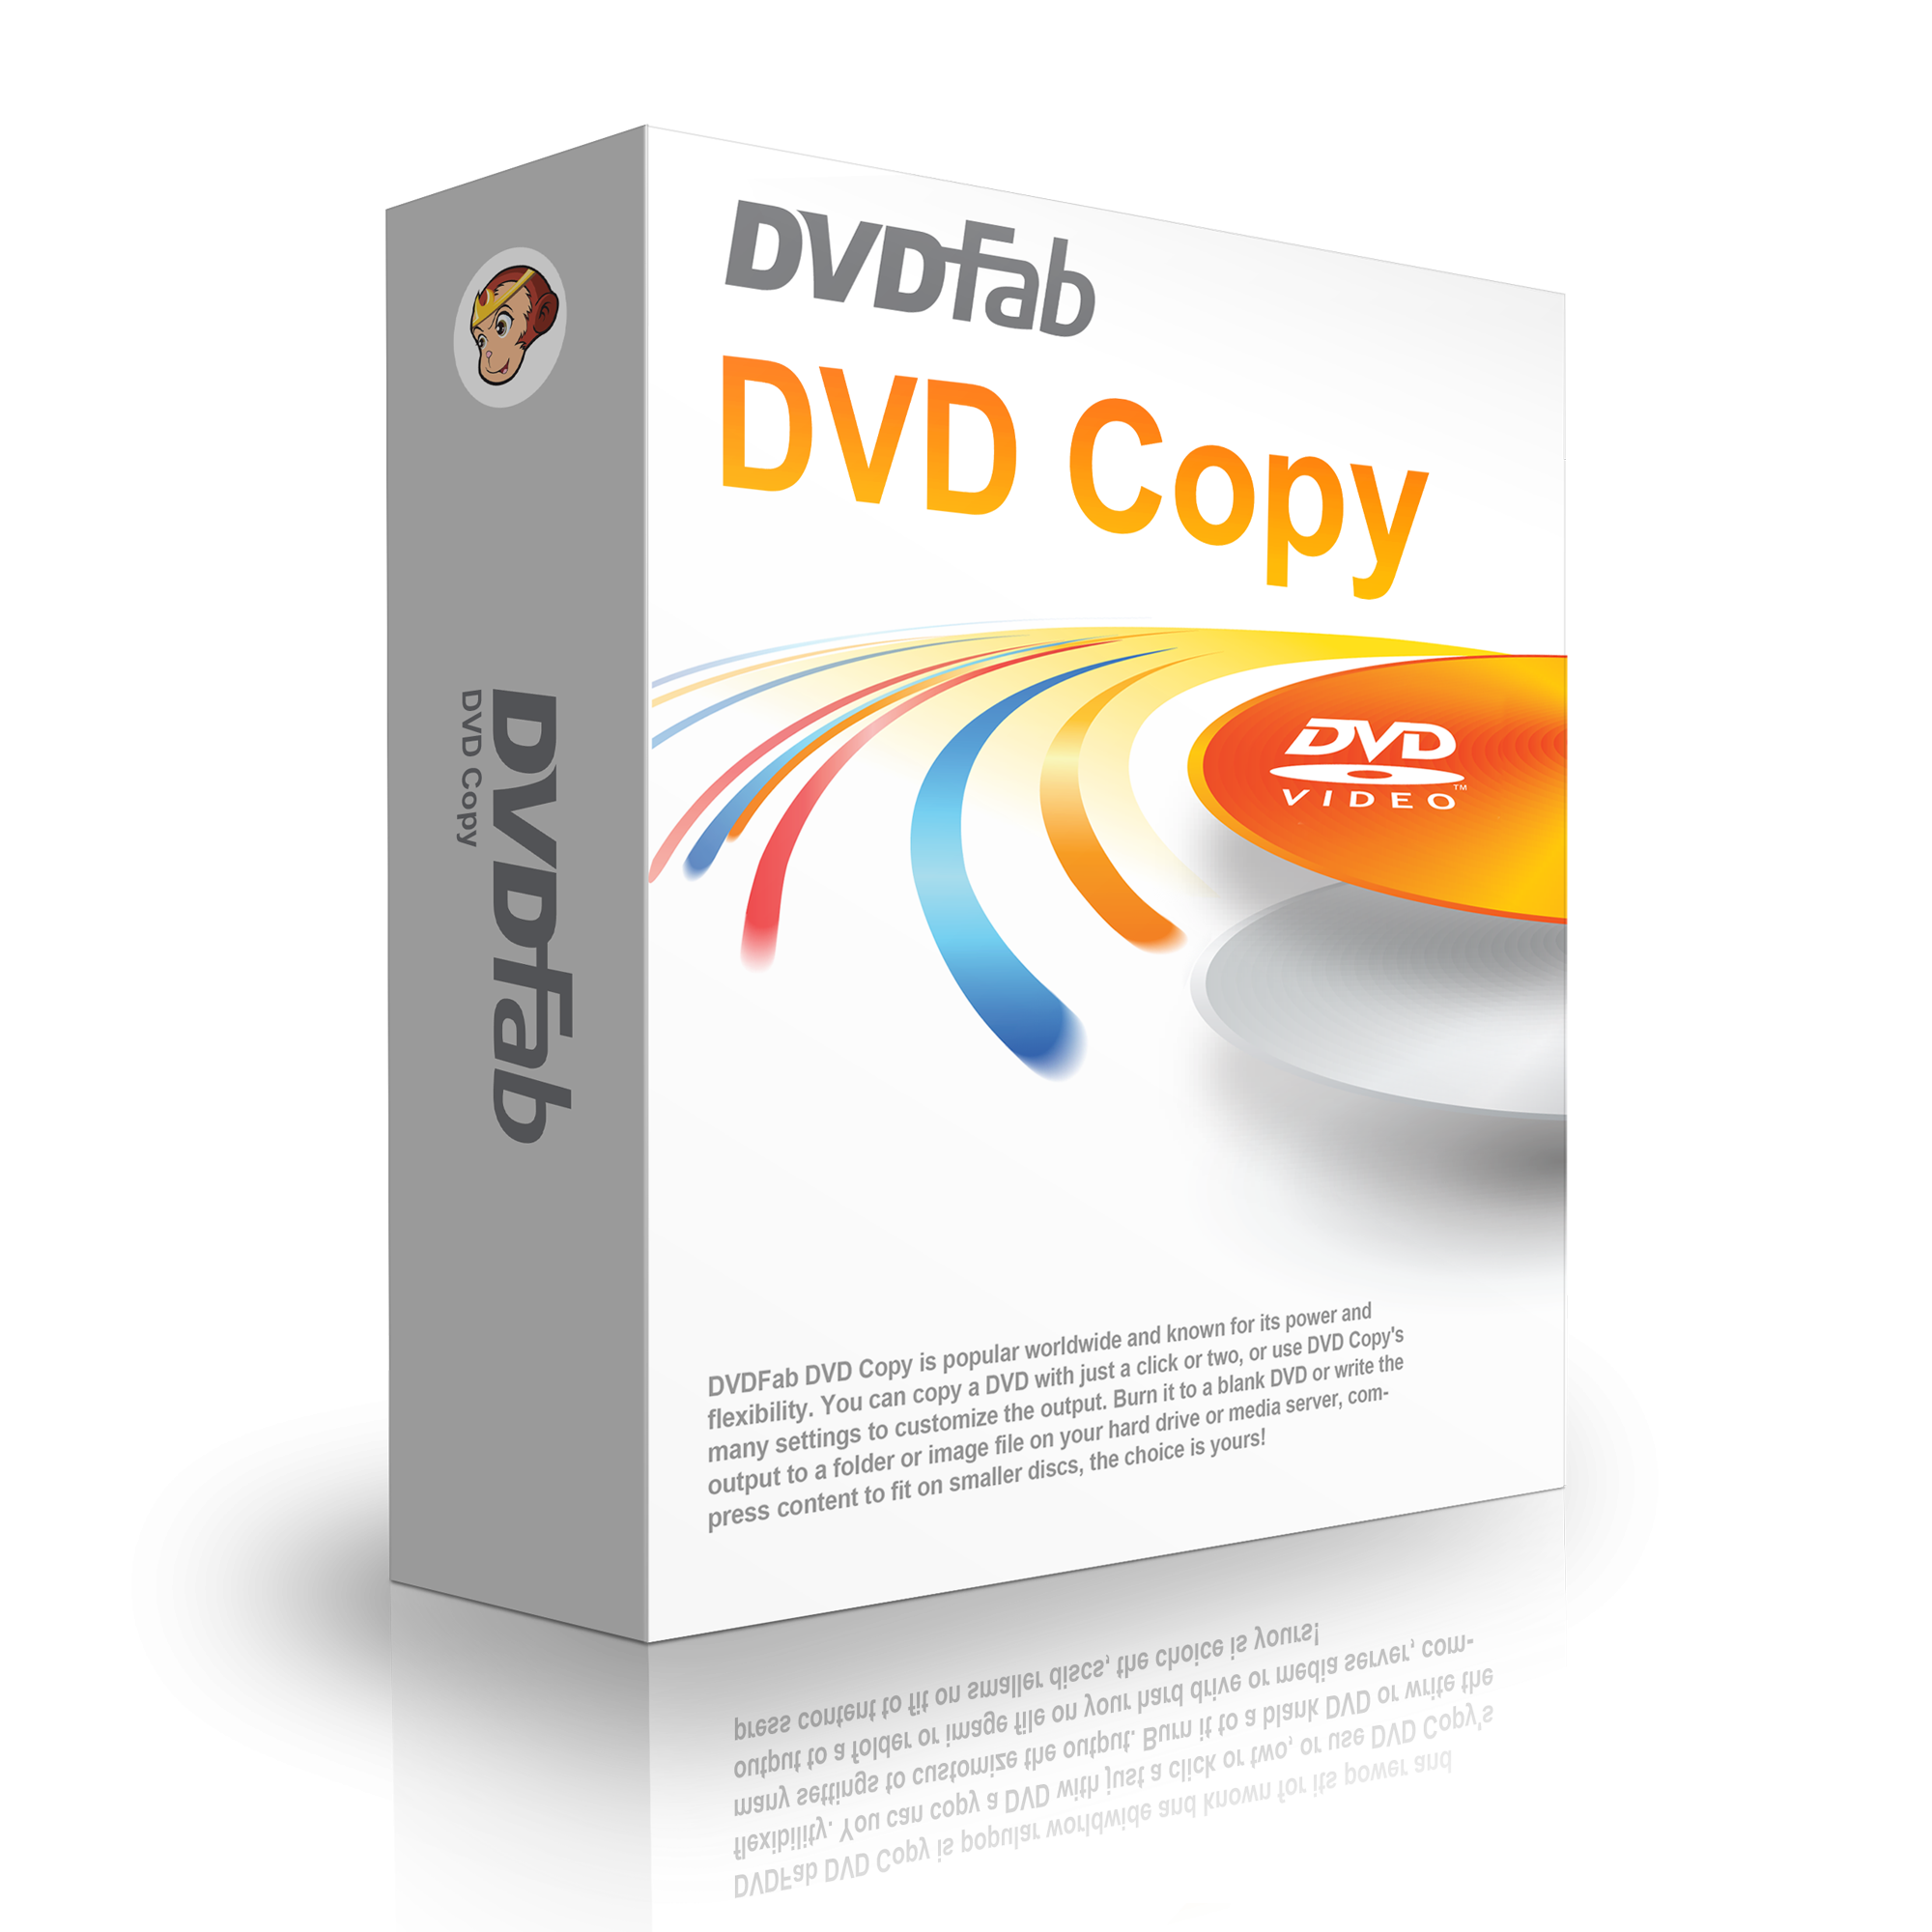 DVDFab DVD Copy DVDFab